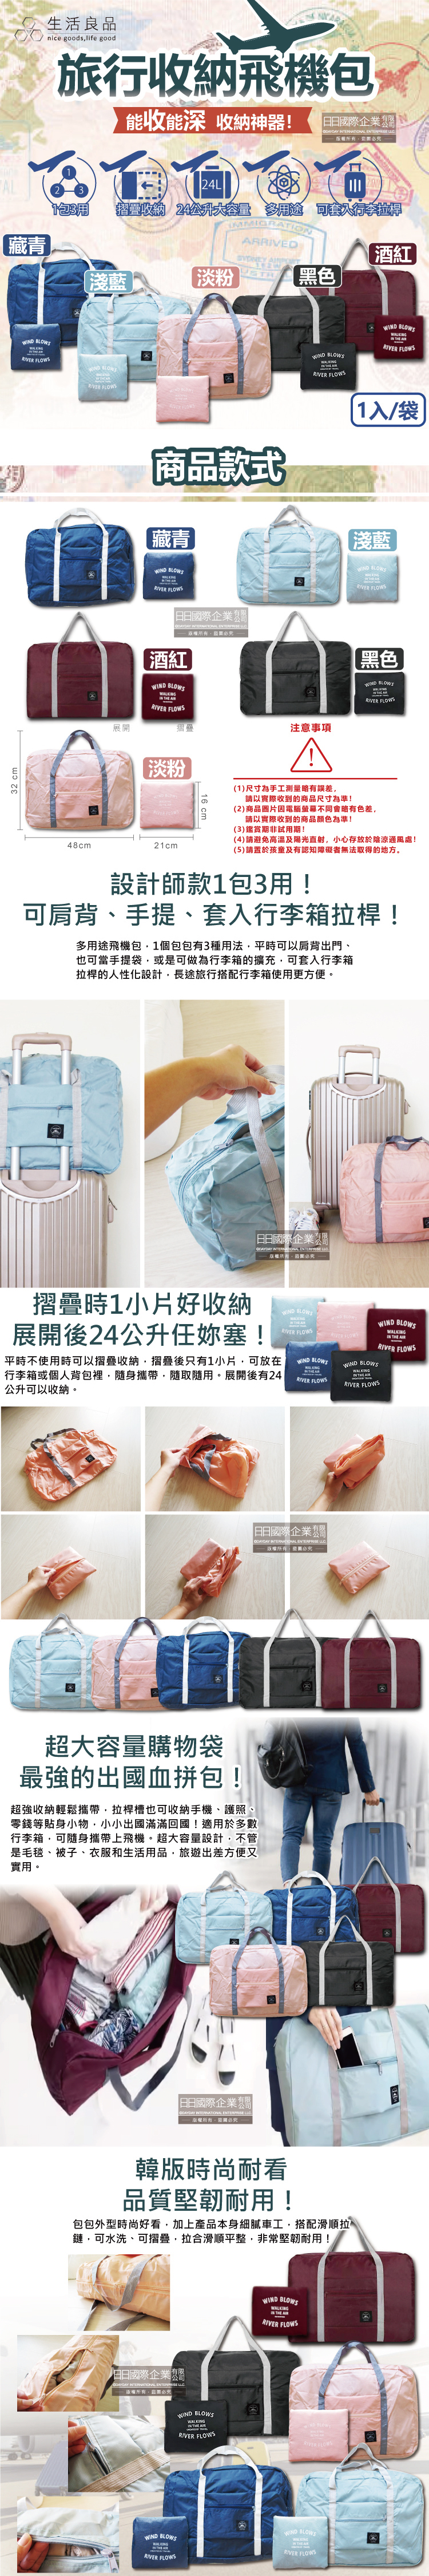 (户外-收纳包)生活良品-韩版超大容量摺叠旅行袋飞机包-(容量24公升)(5款)介绍图